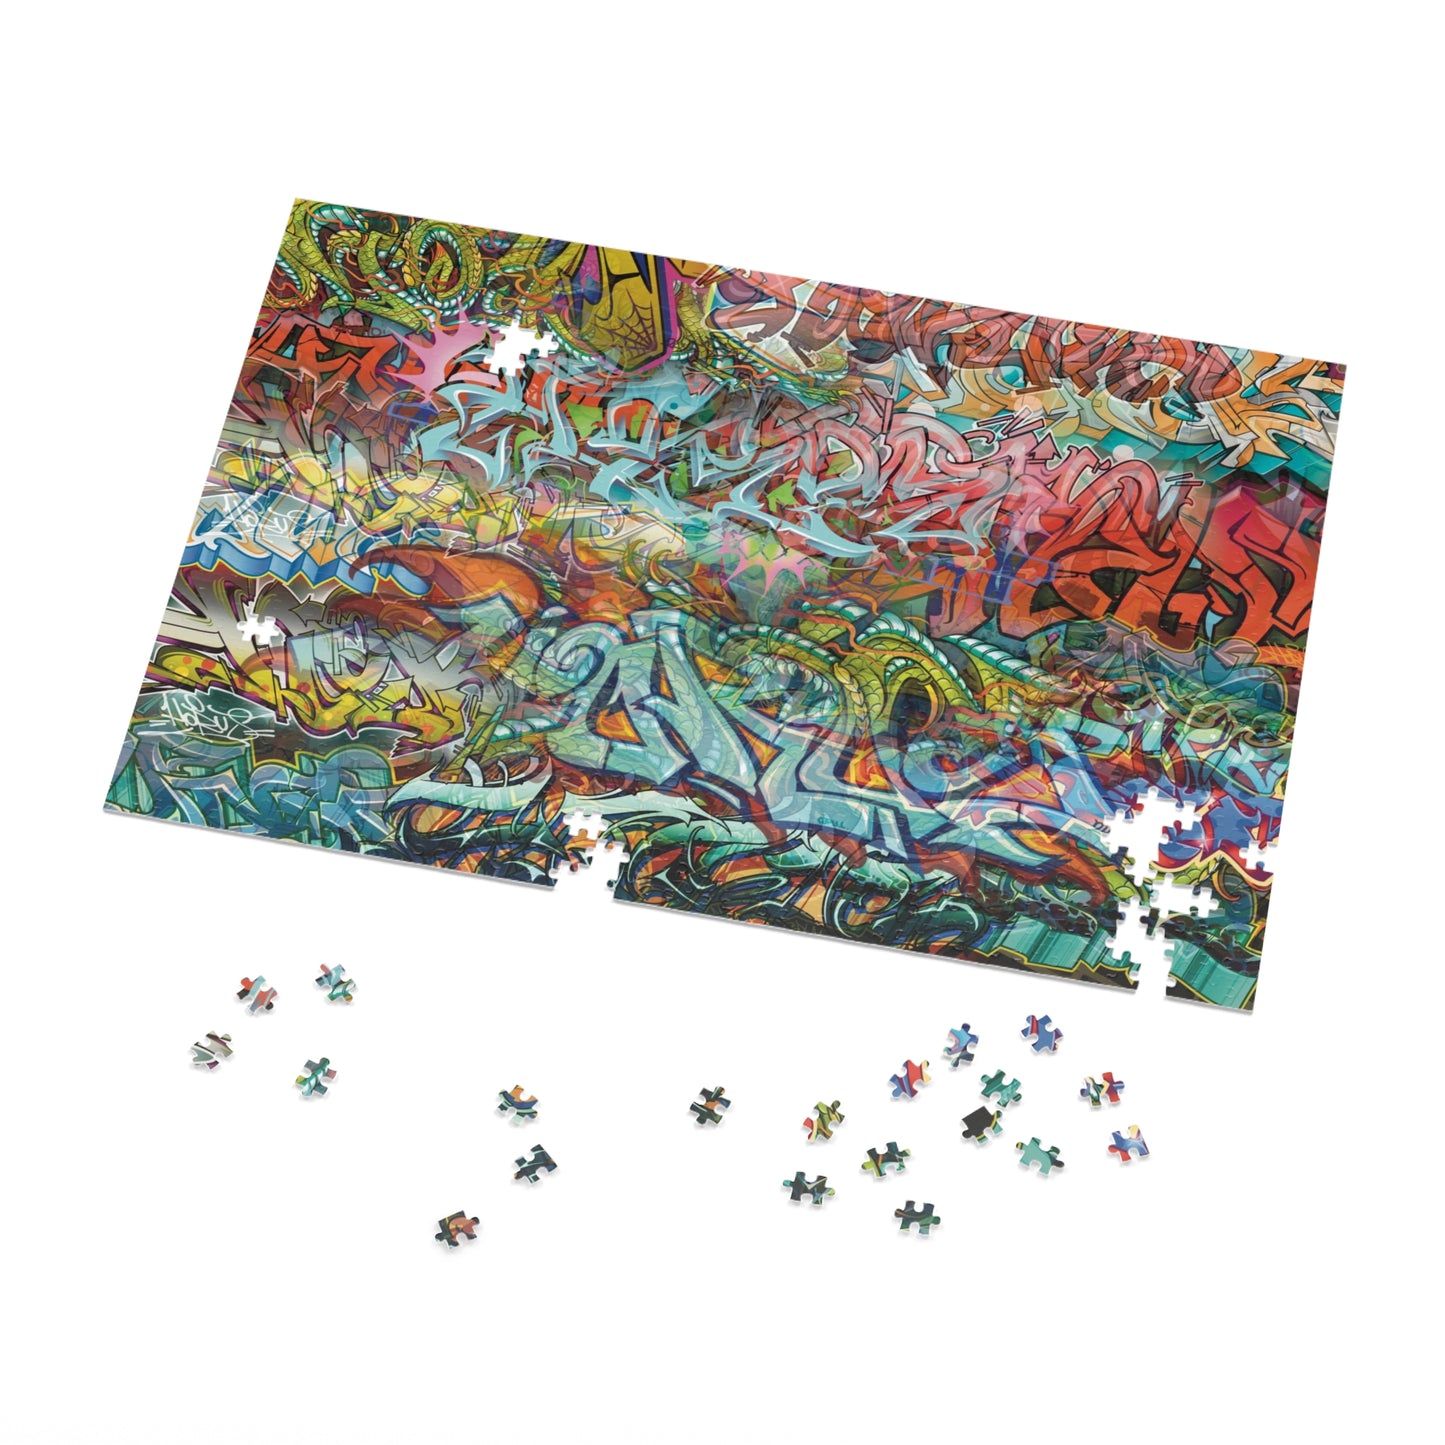 Graffiti Art Jigsaw Puzzle (1000-Piece)